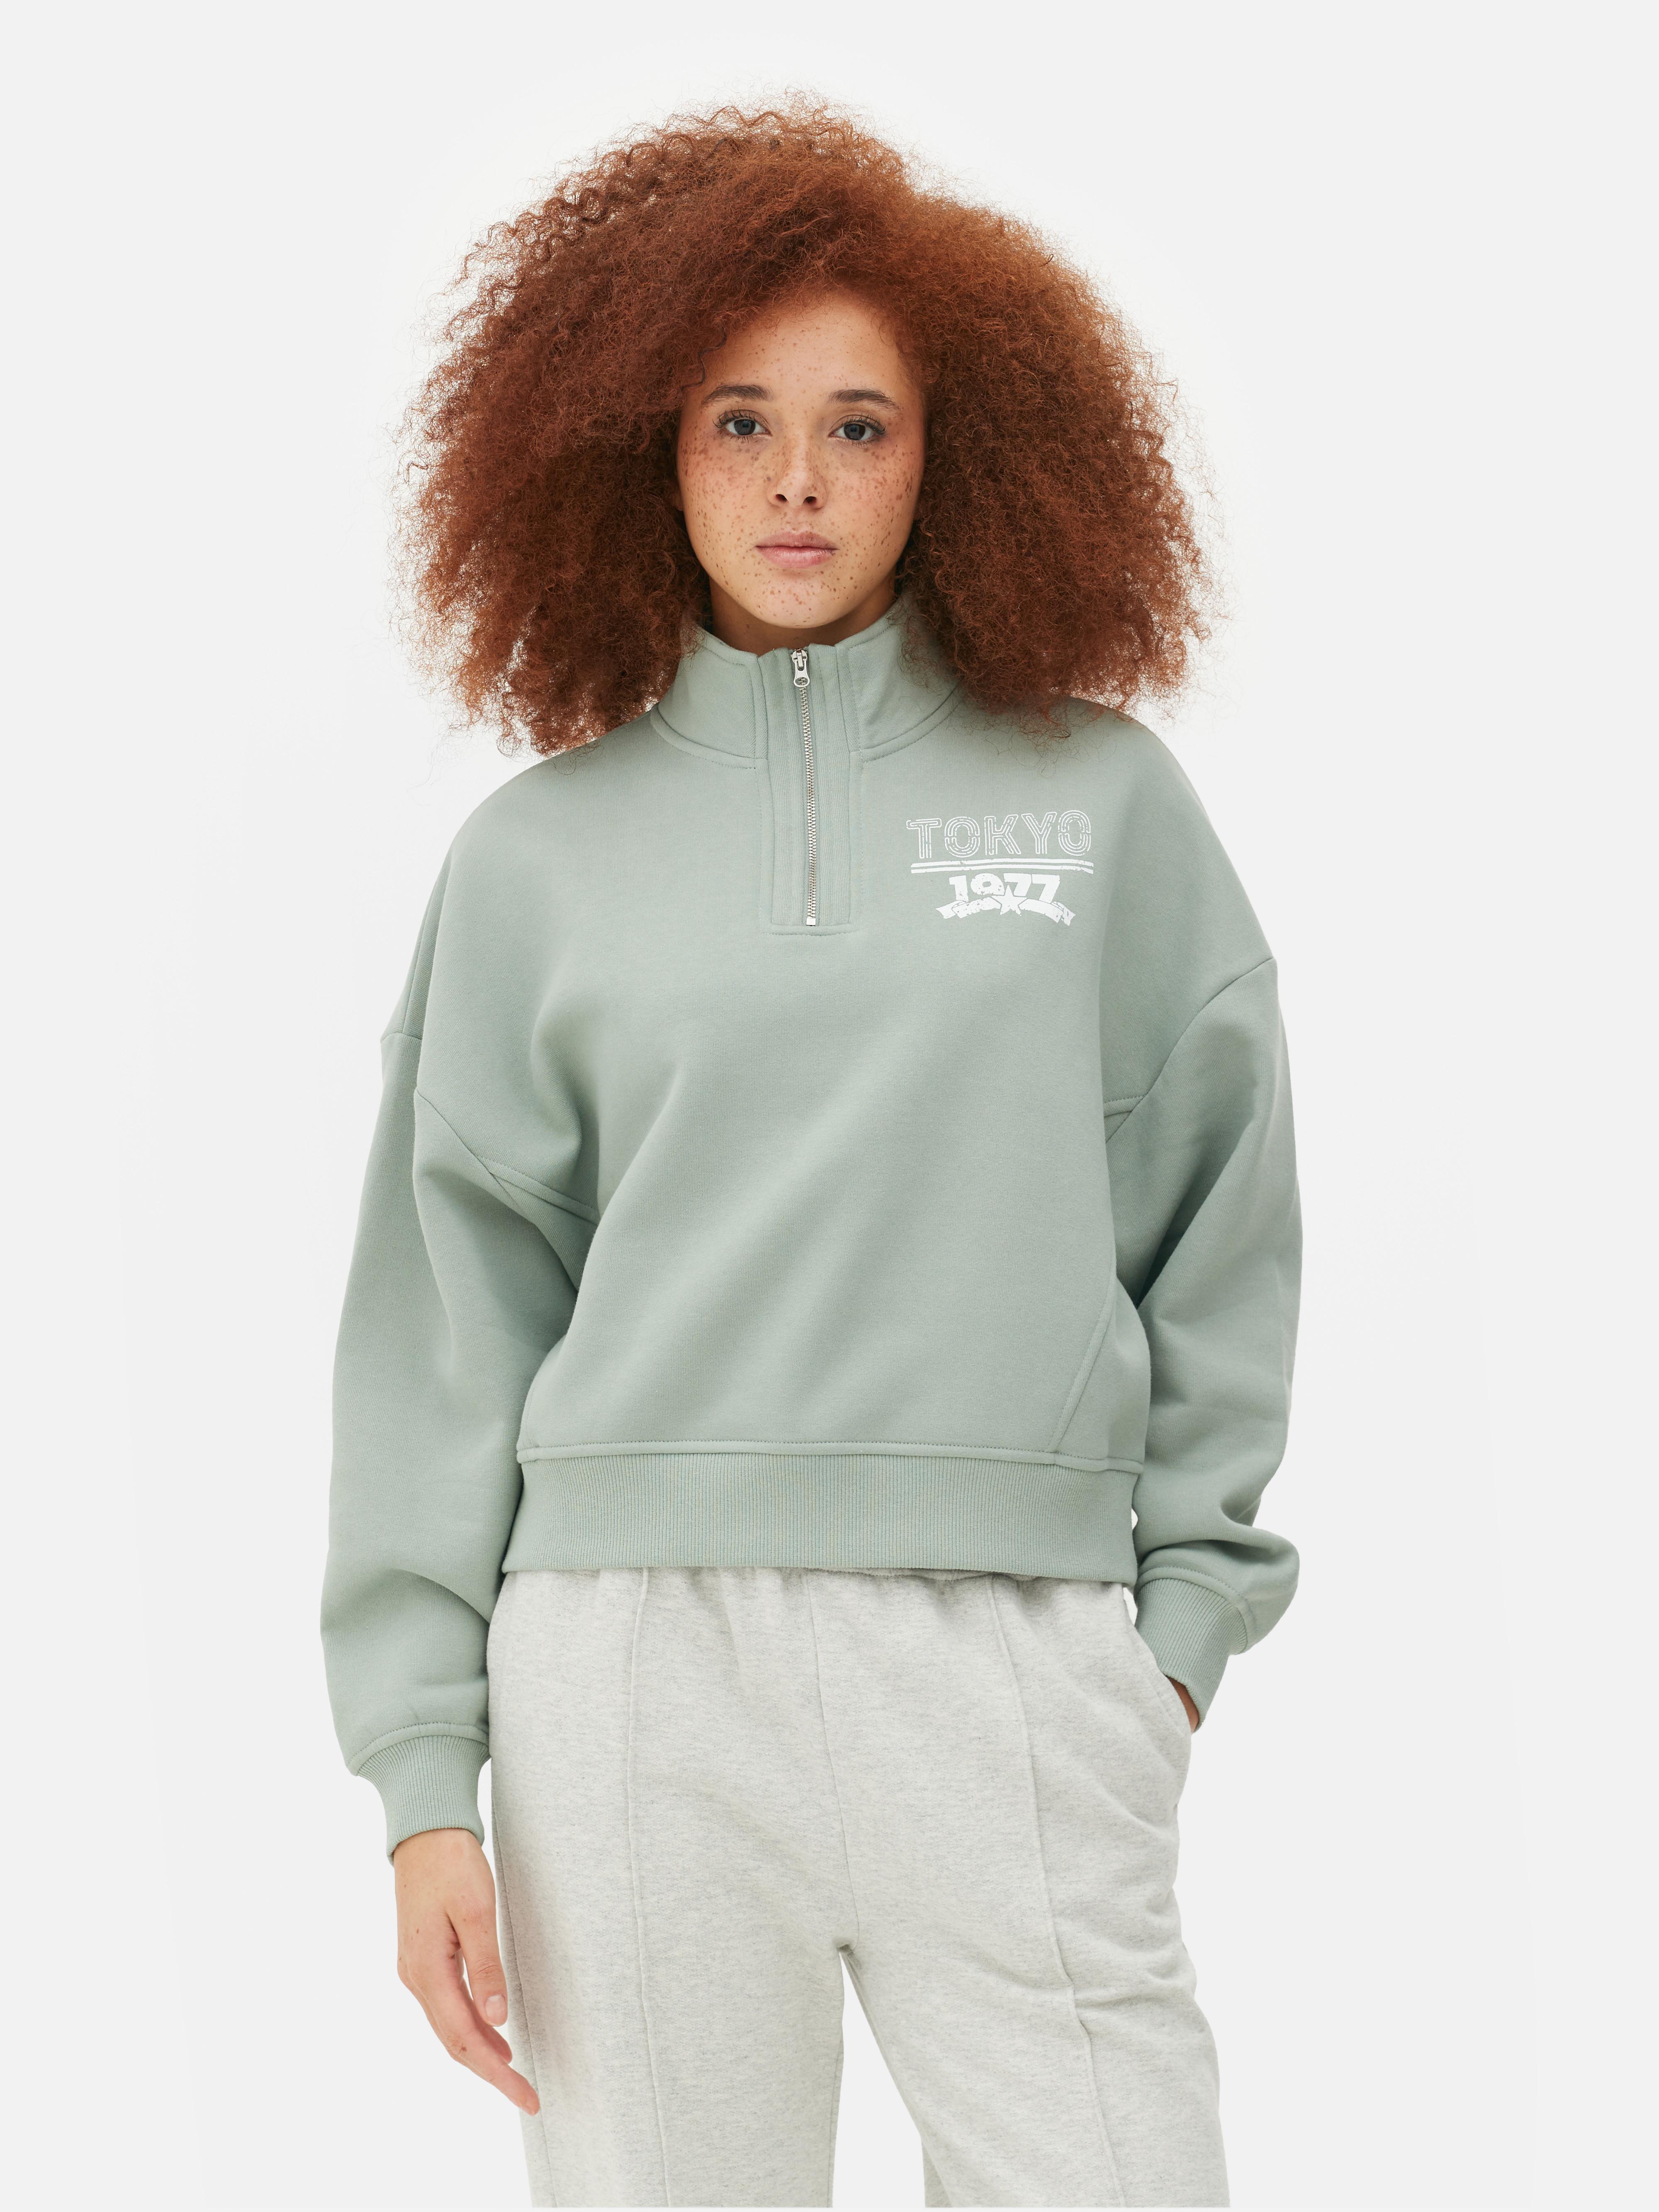 Paula Echevarría Half Zip Sweatshirt | Primark